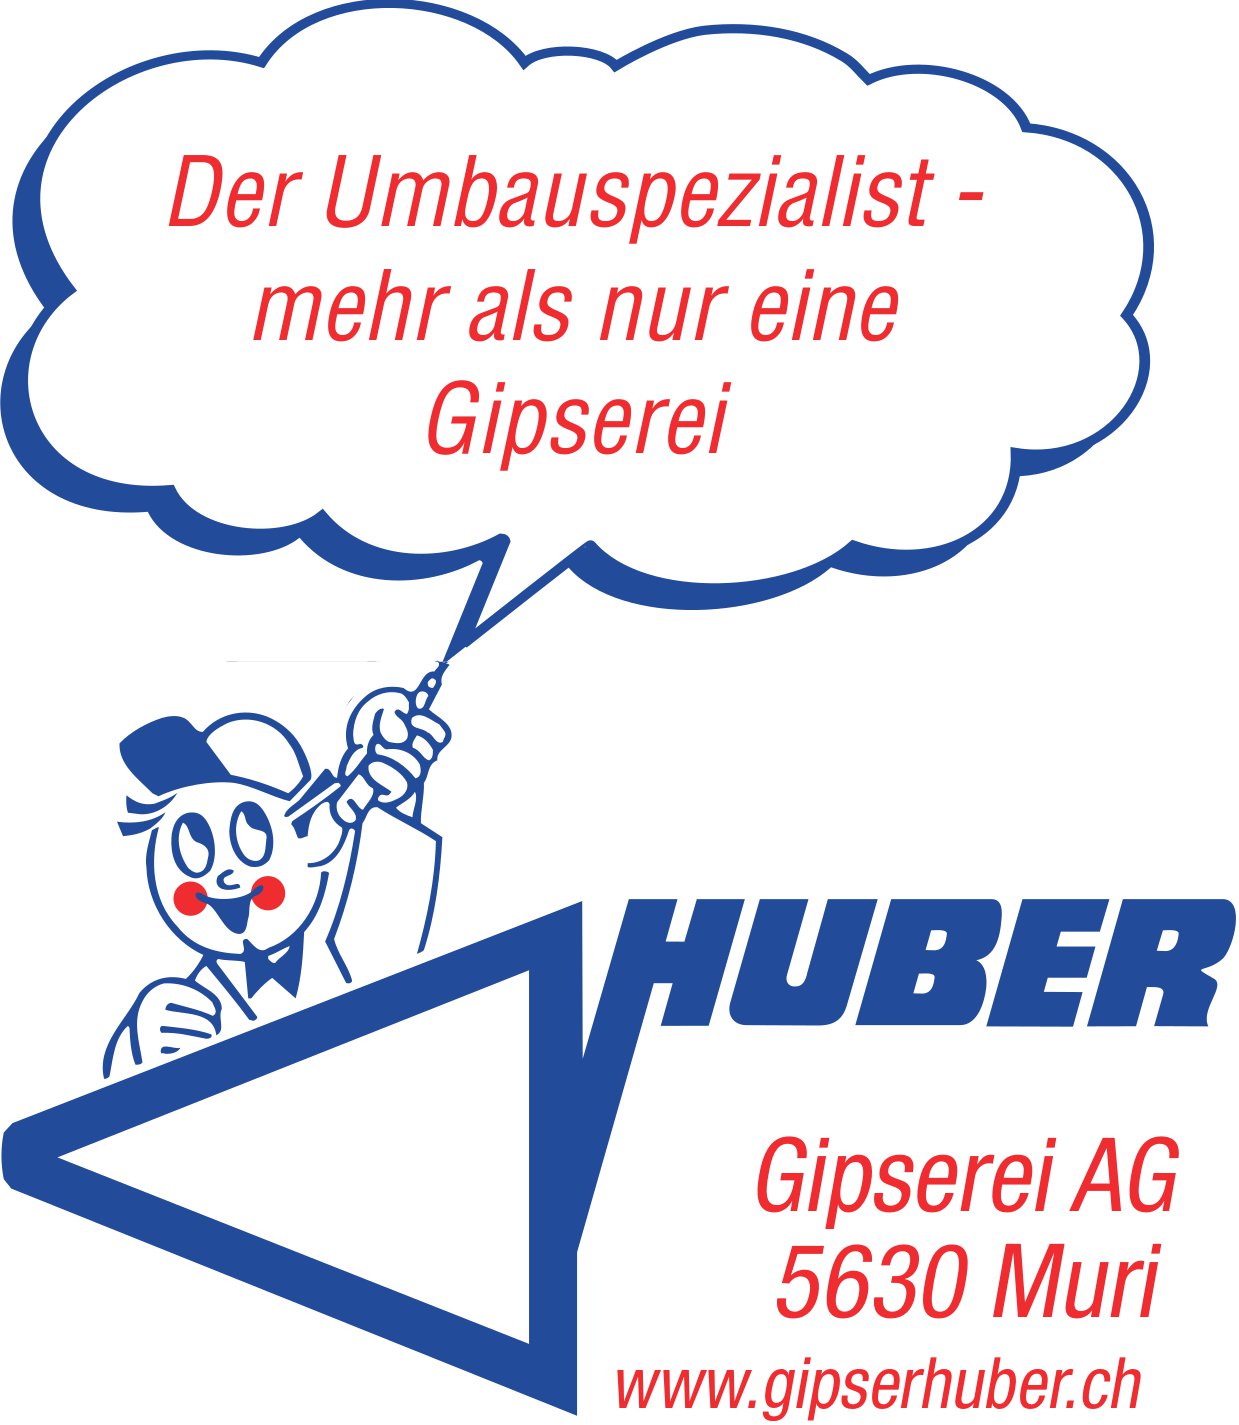 Huber Gipserei AG, Muri - Der Umbauspezialist - mehr als nur eine Gipserei